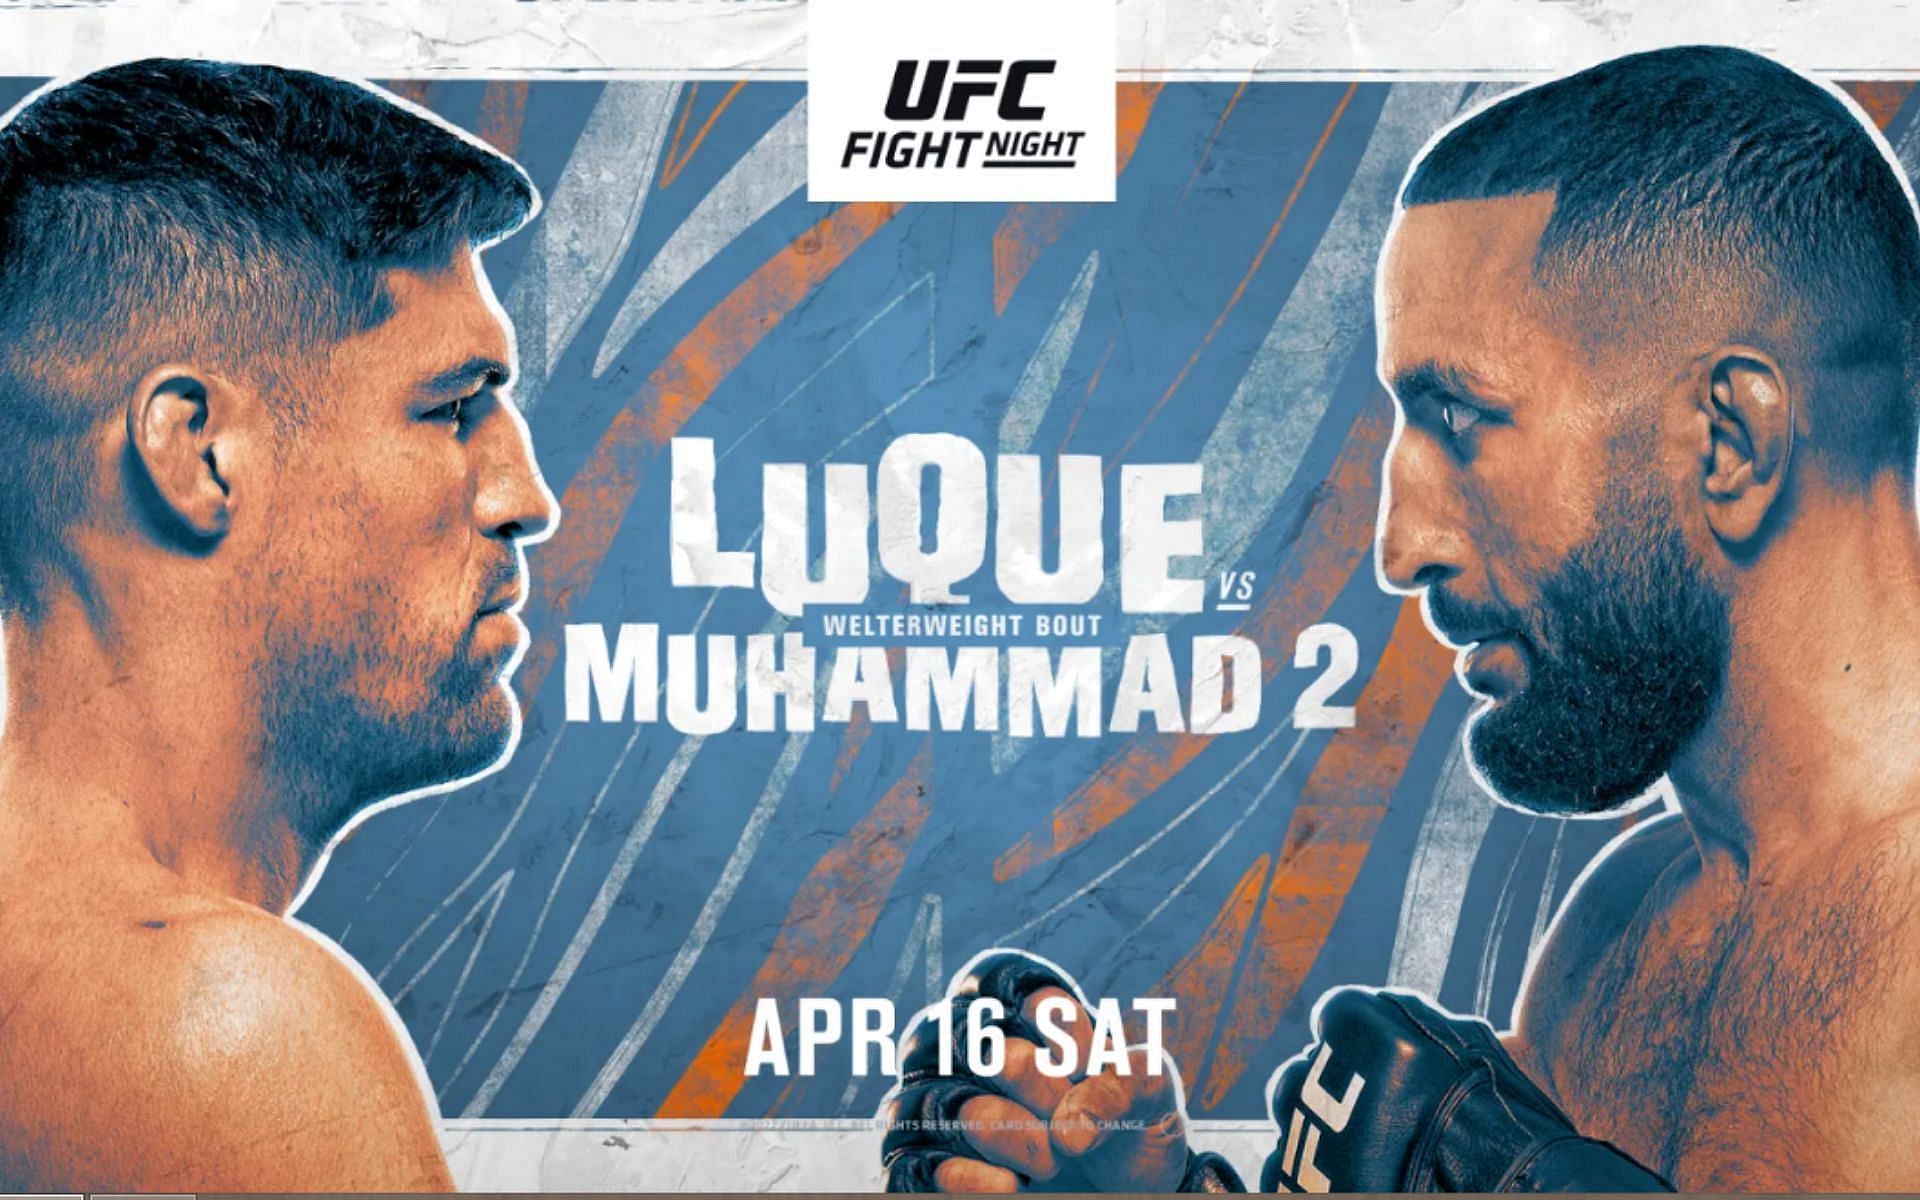 UFC Fight Night: Luque vs. Muhammad